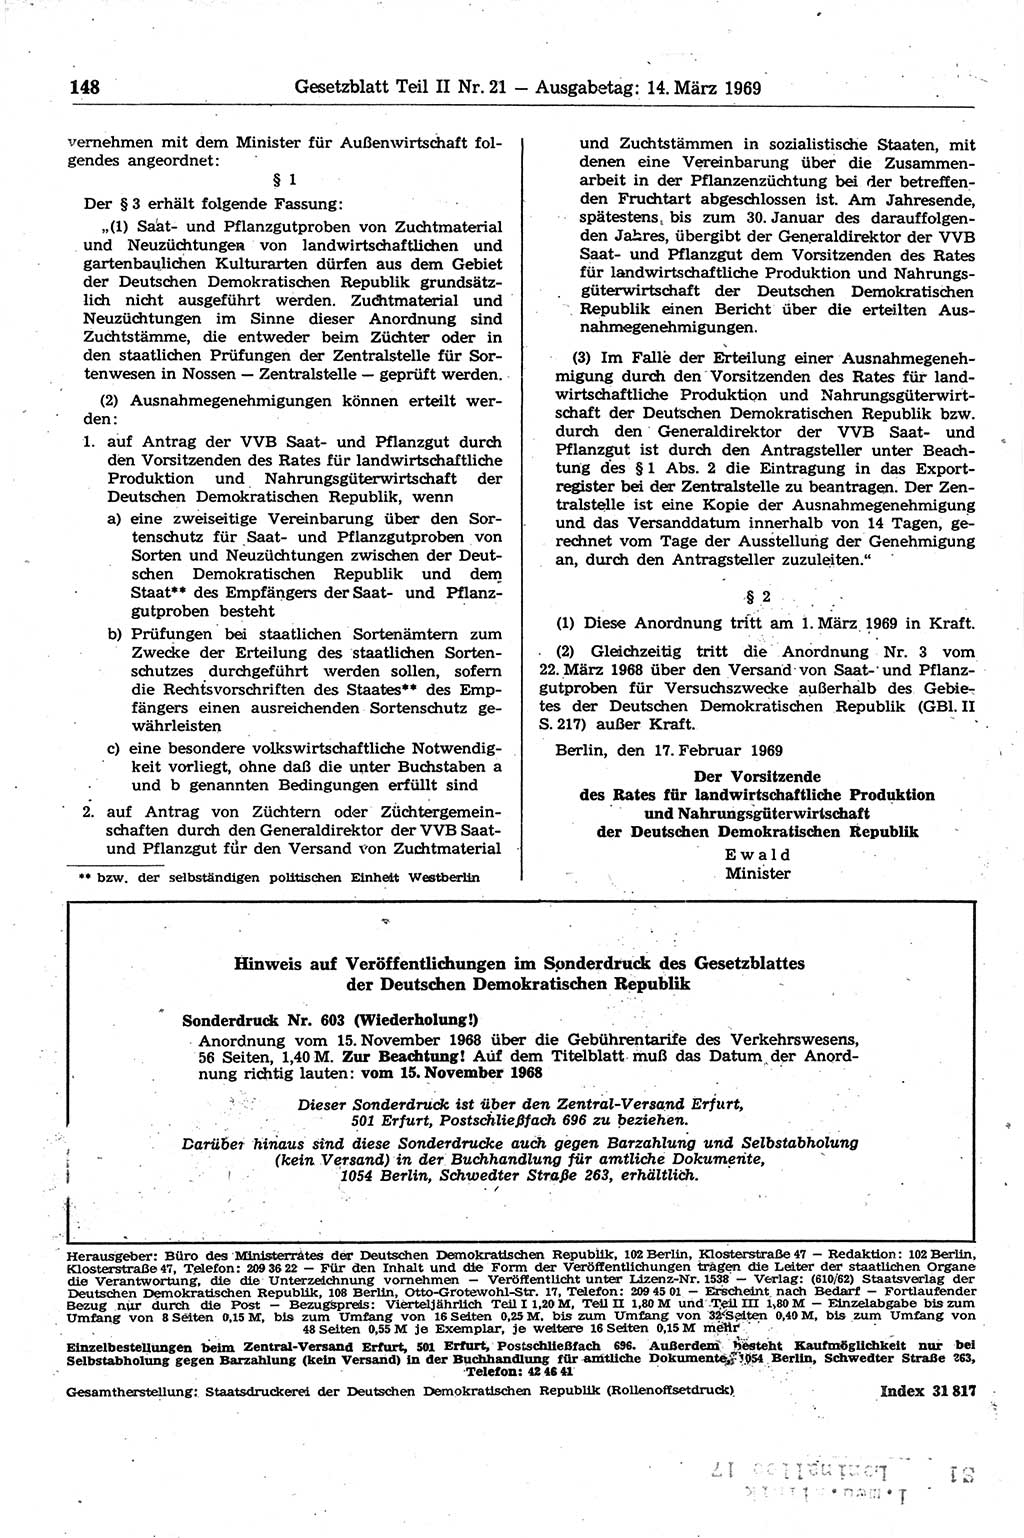 Gesetzblatt (GBl.) der Deutschen Demokratischen Republik (DDR) Teil ⅠⅠ 1969, Seite 148 (GBl. DDR ⅠⅠ 1969, S. 148)